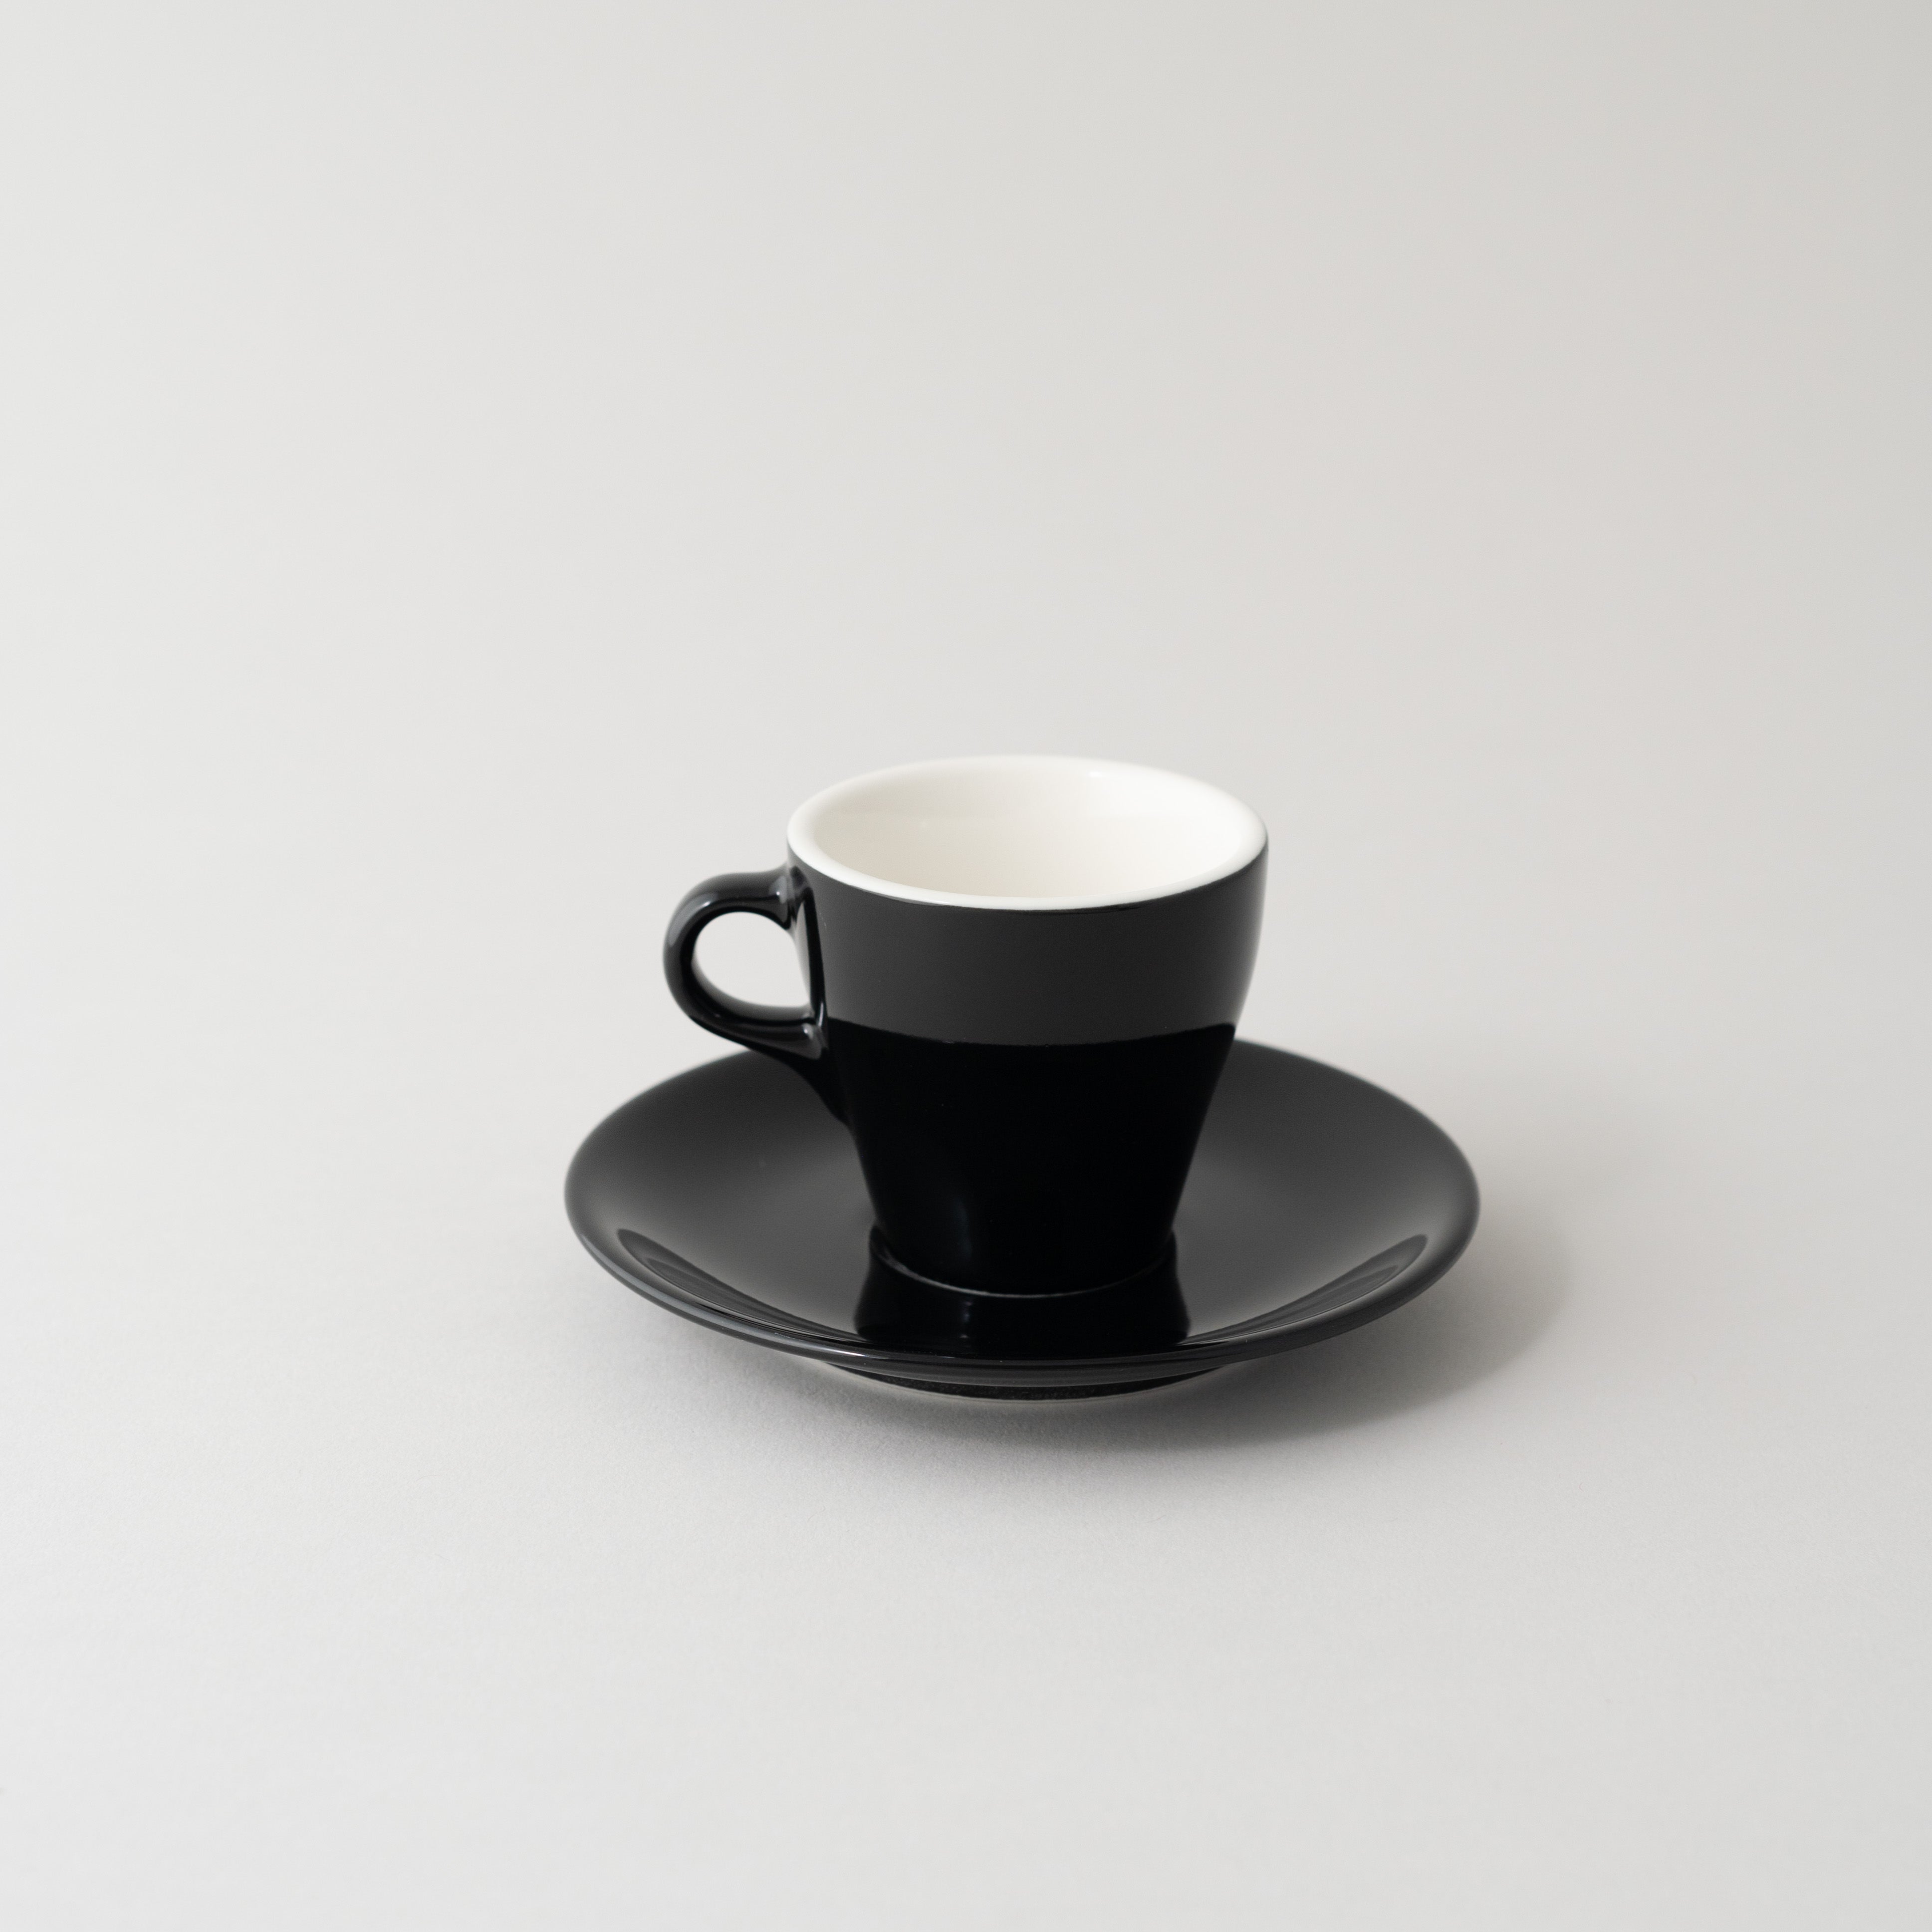 Origami 3 oz Espresso Saucer and Cup Black